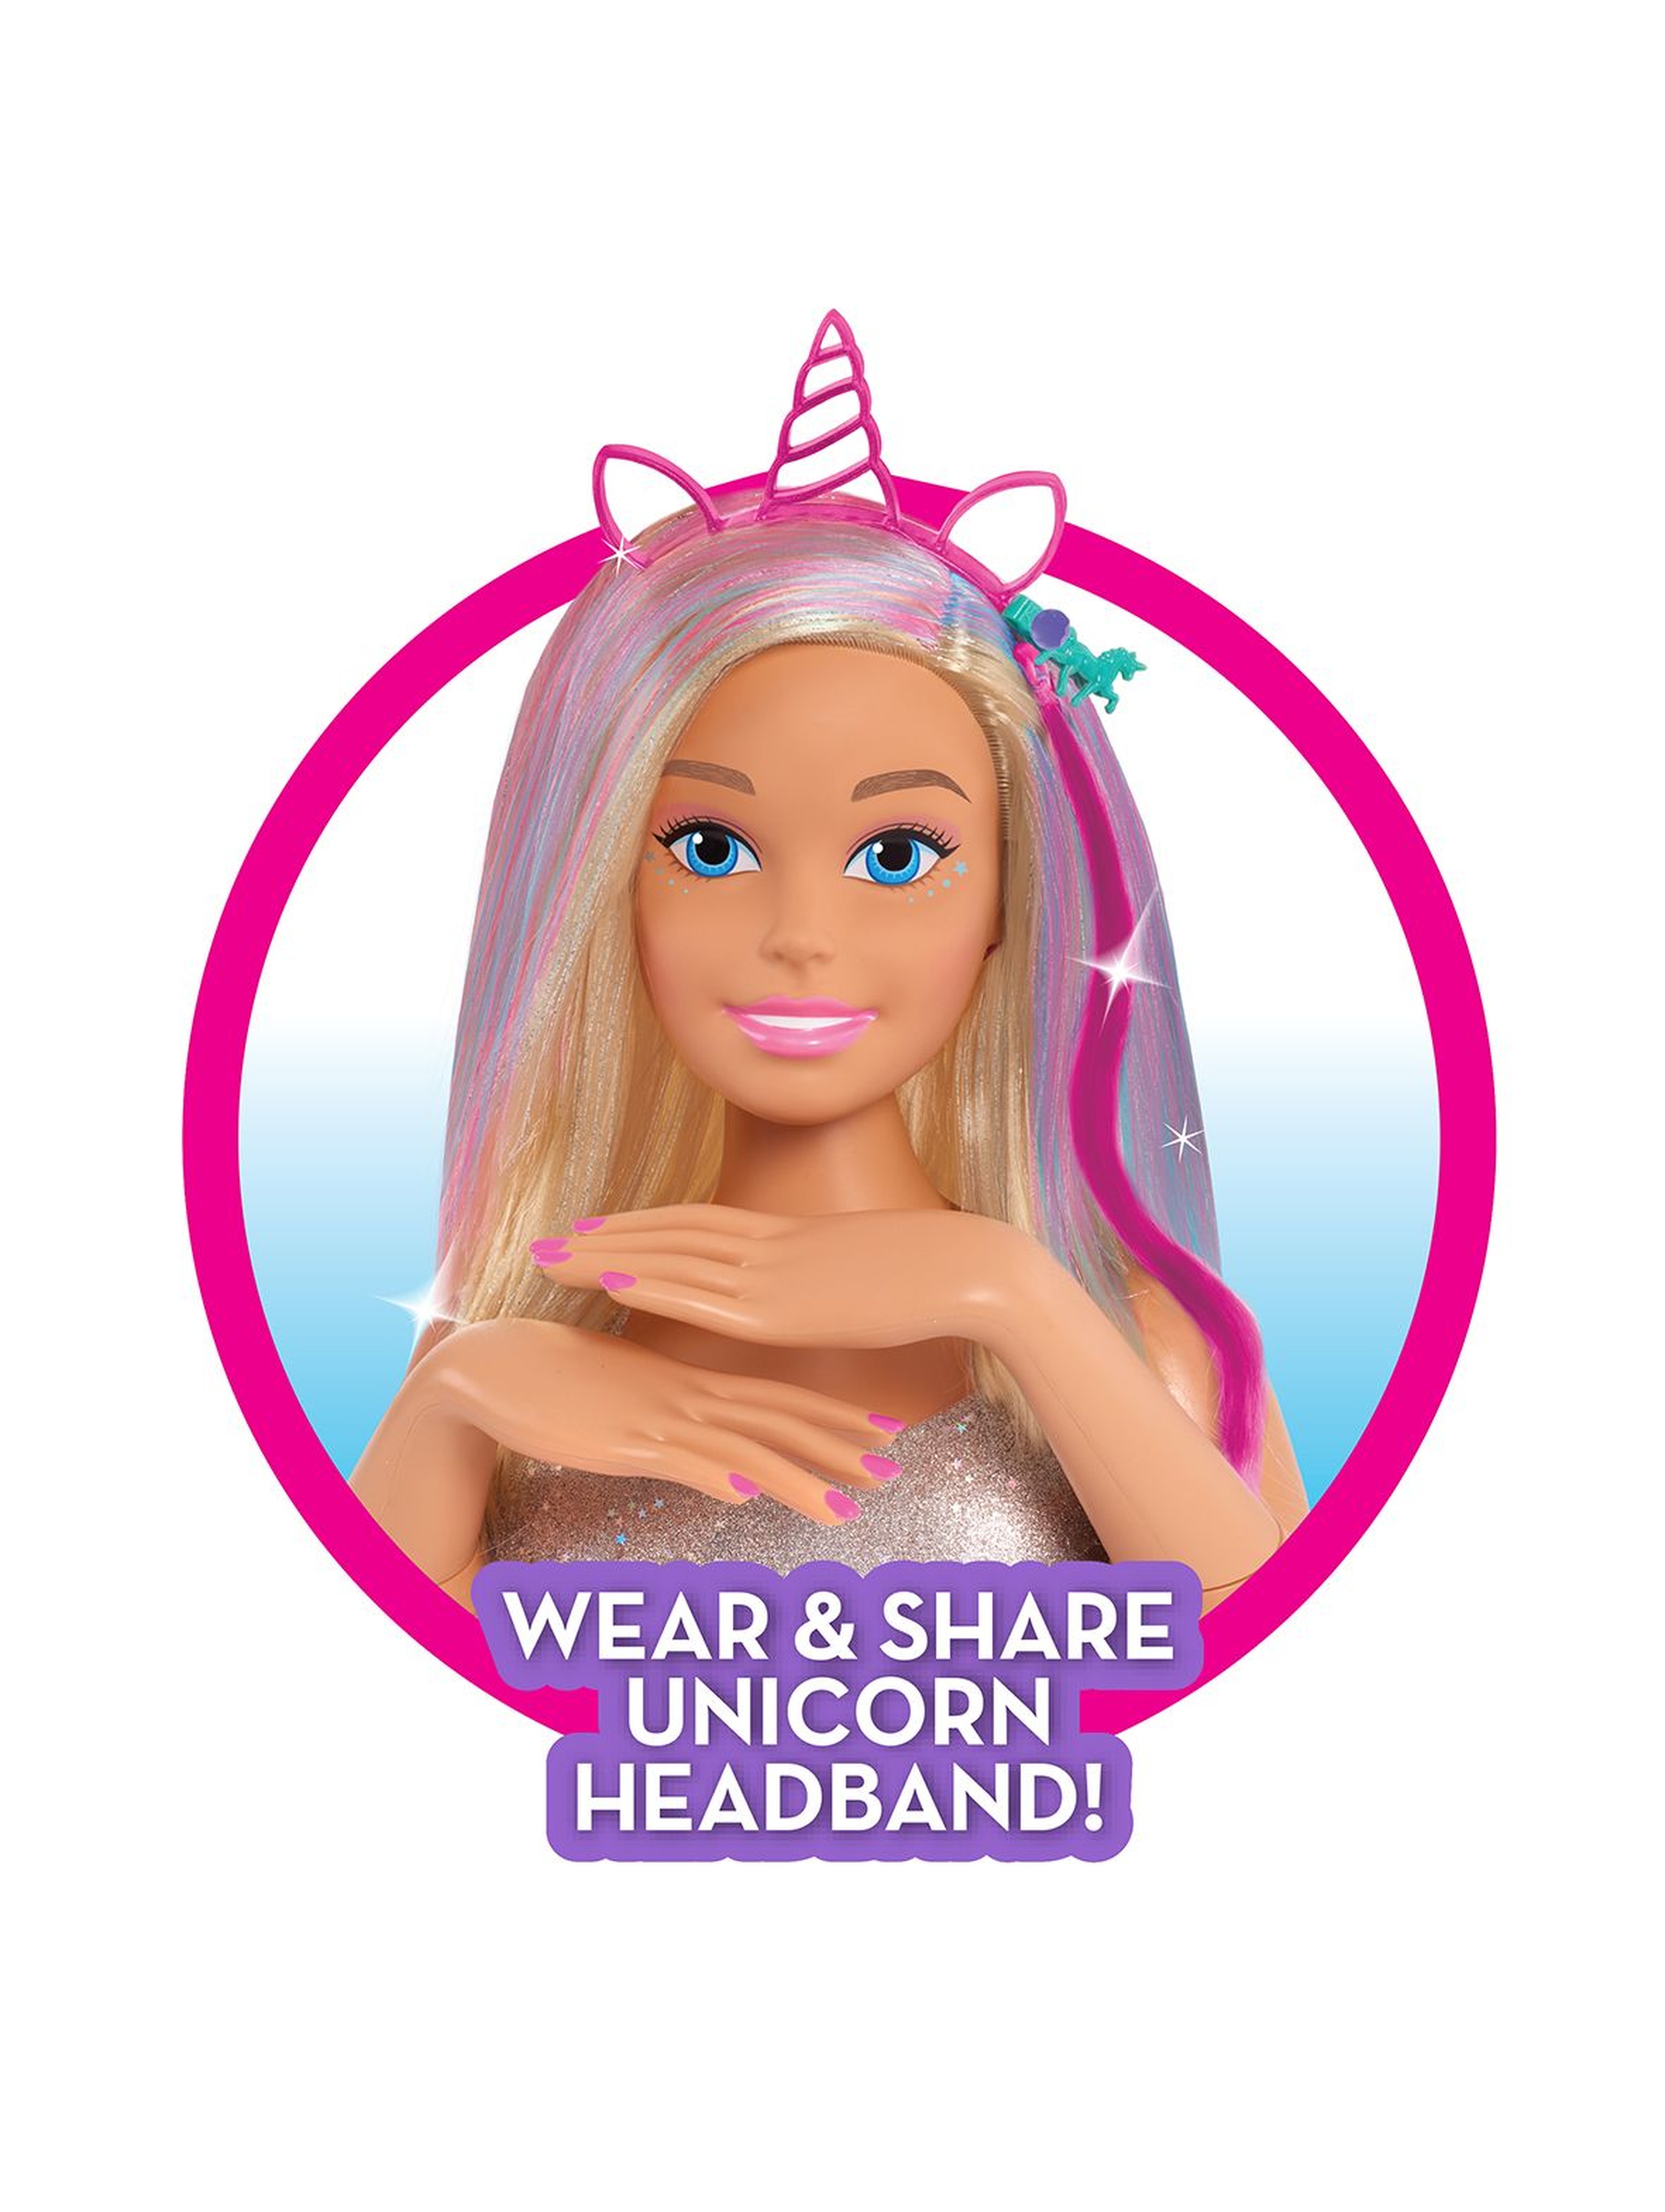 Barbie Głowa do stylizacji Glitter Hair Deluxe Styling